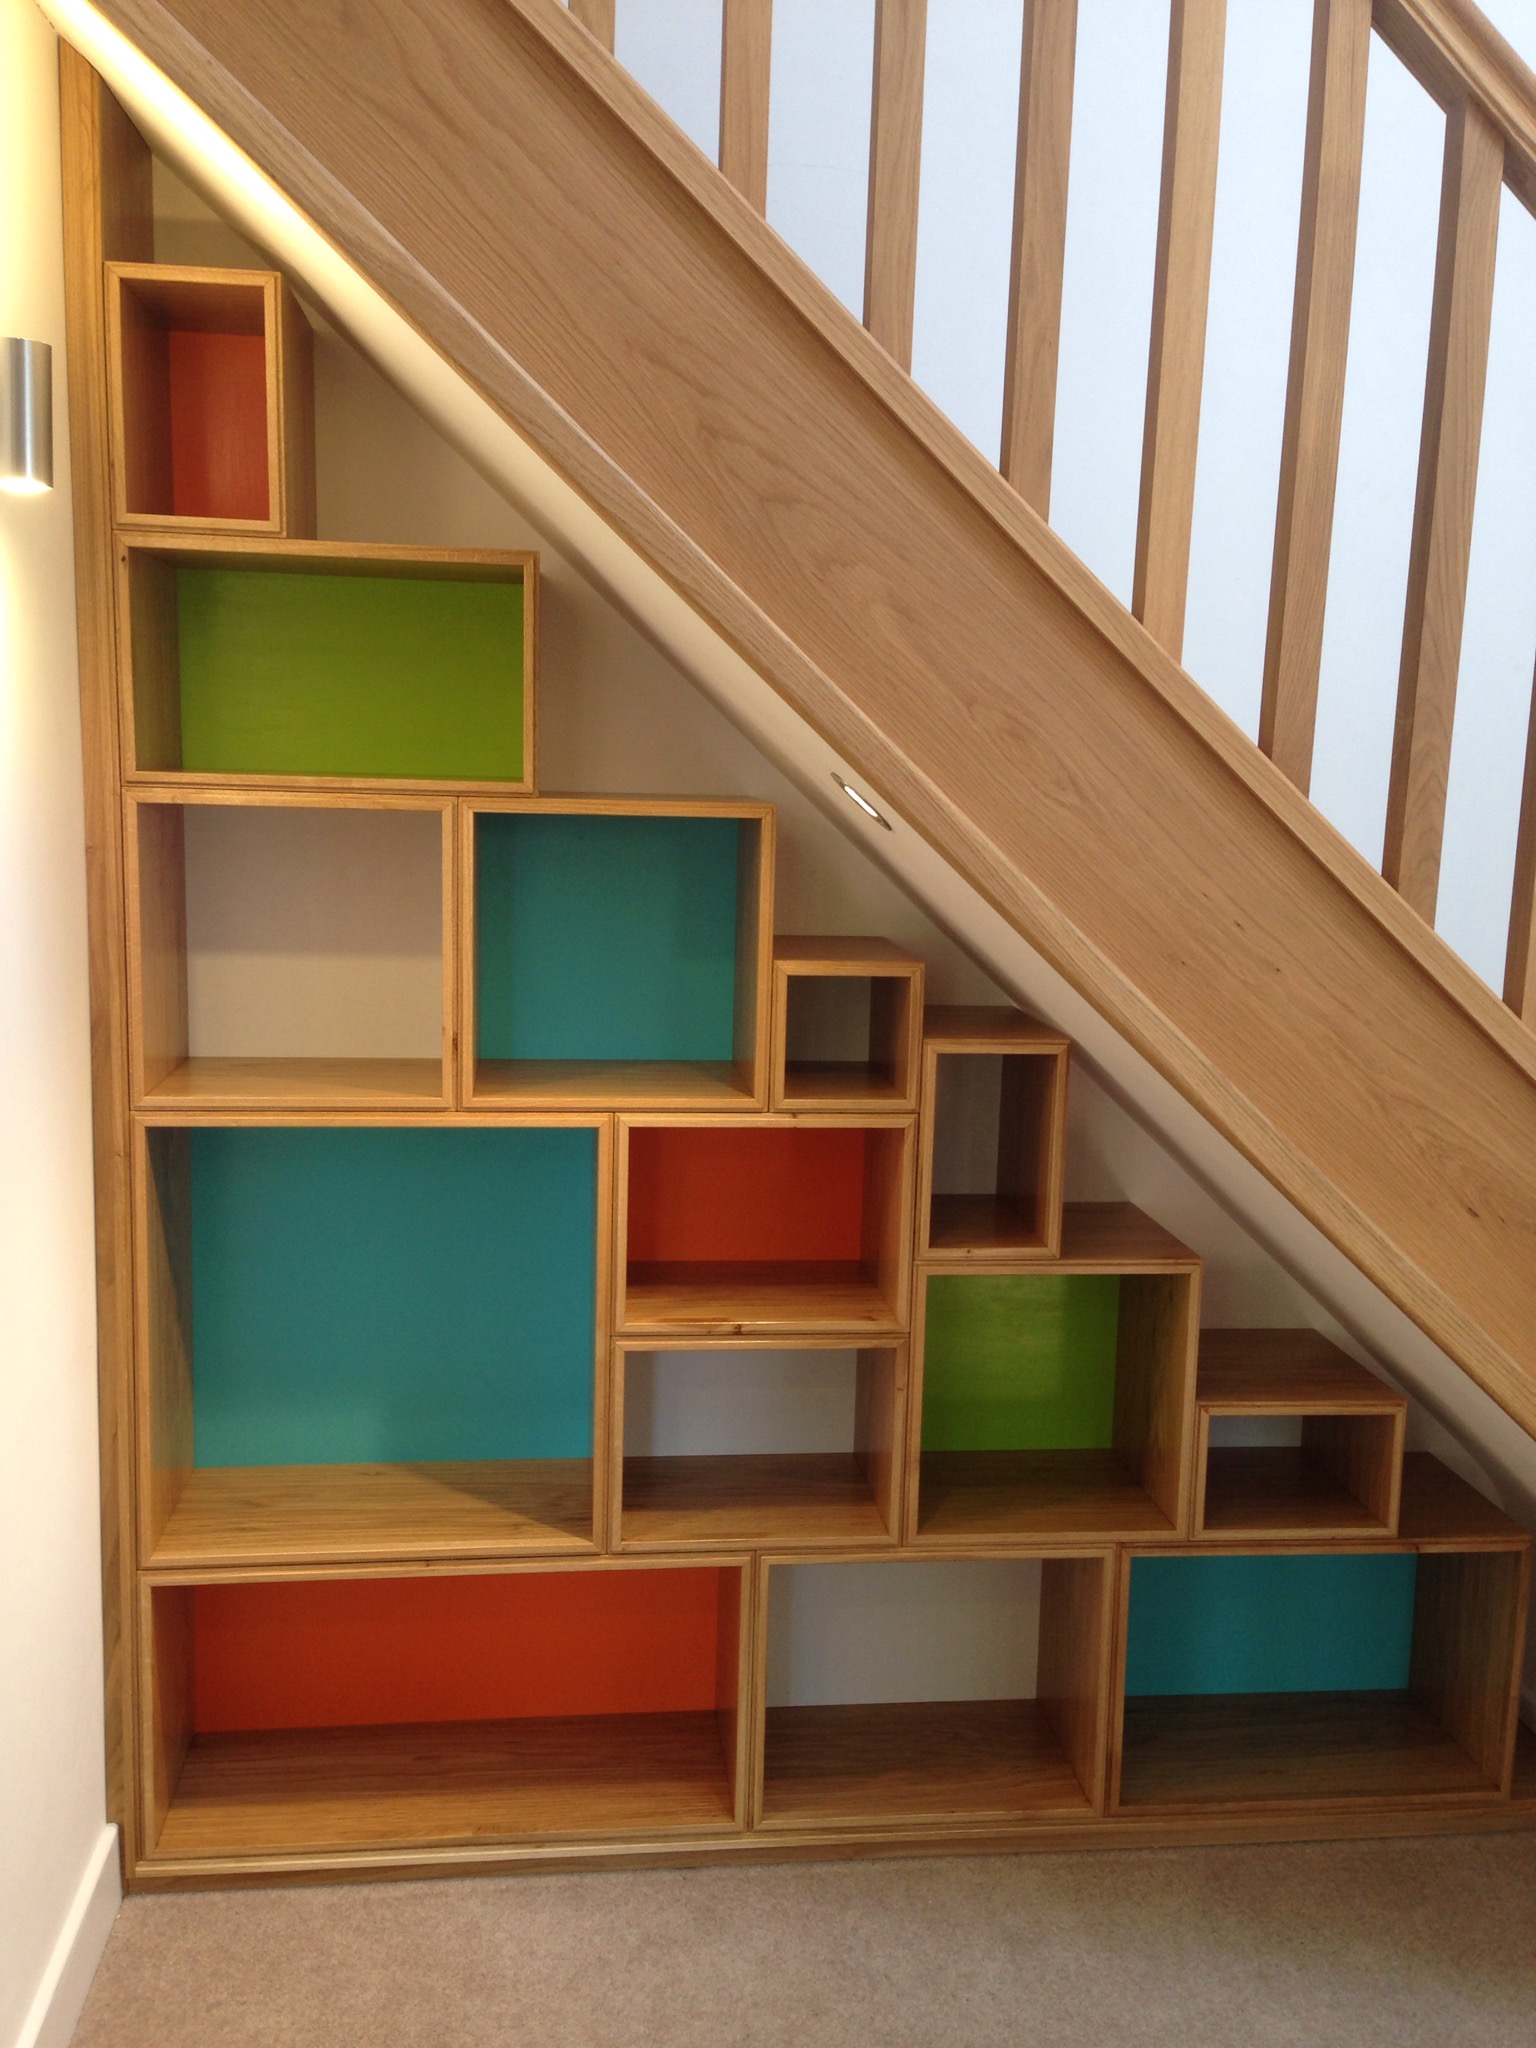 Under Stairs Storage Ideas | Storage Solutions | HouseLogic